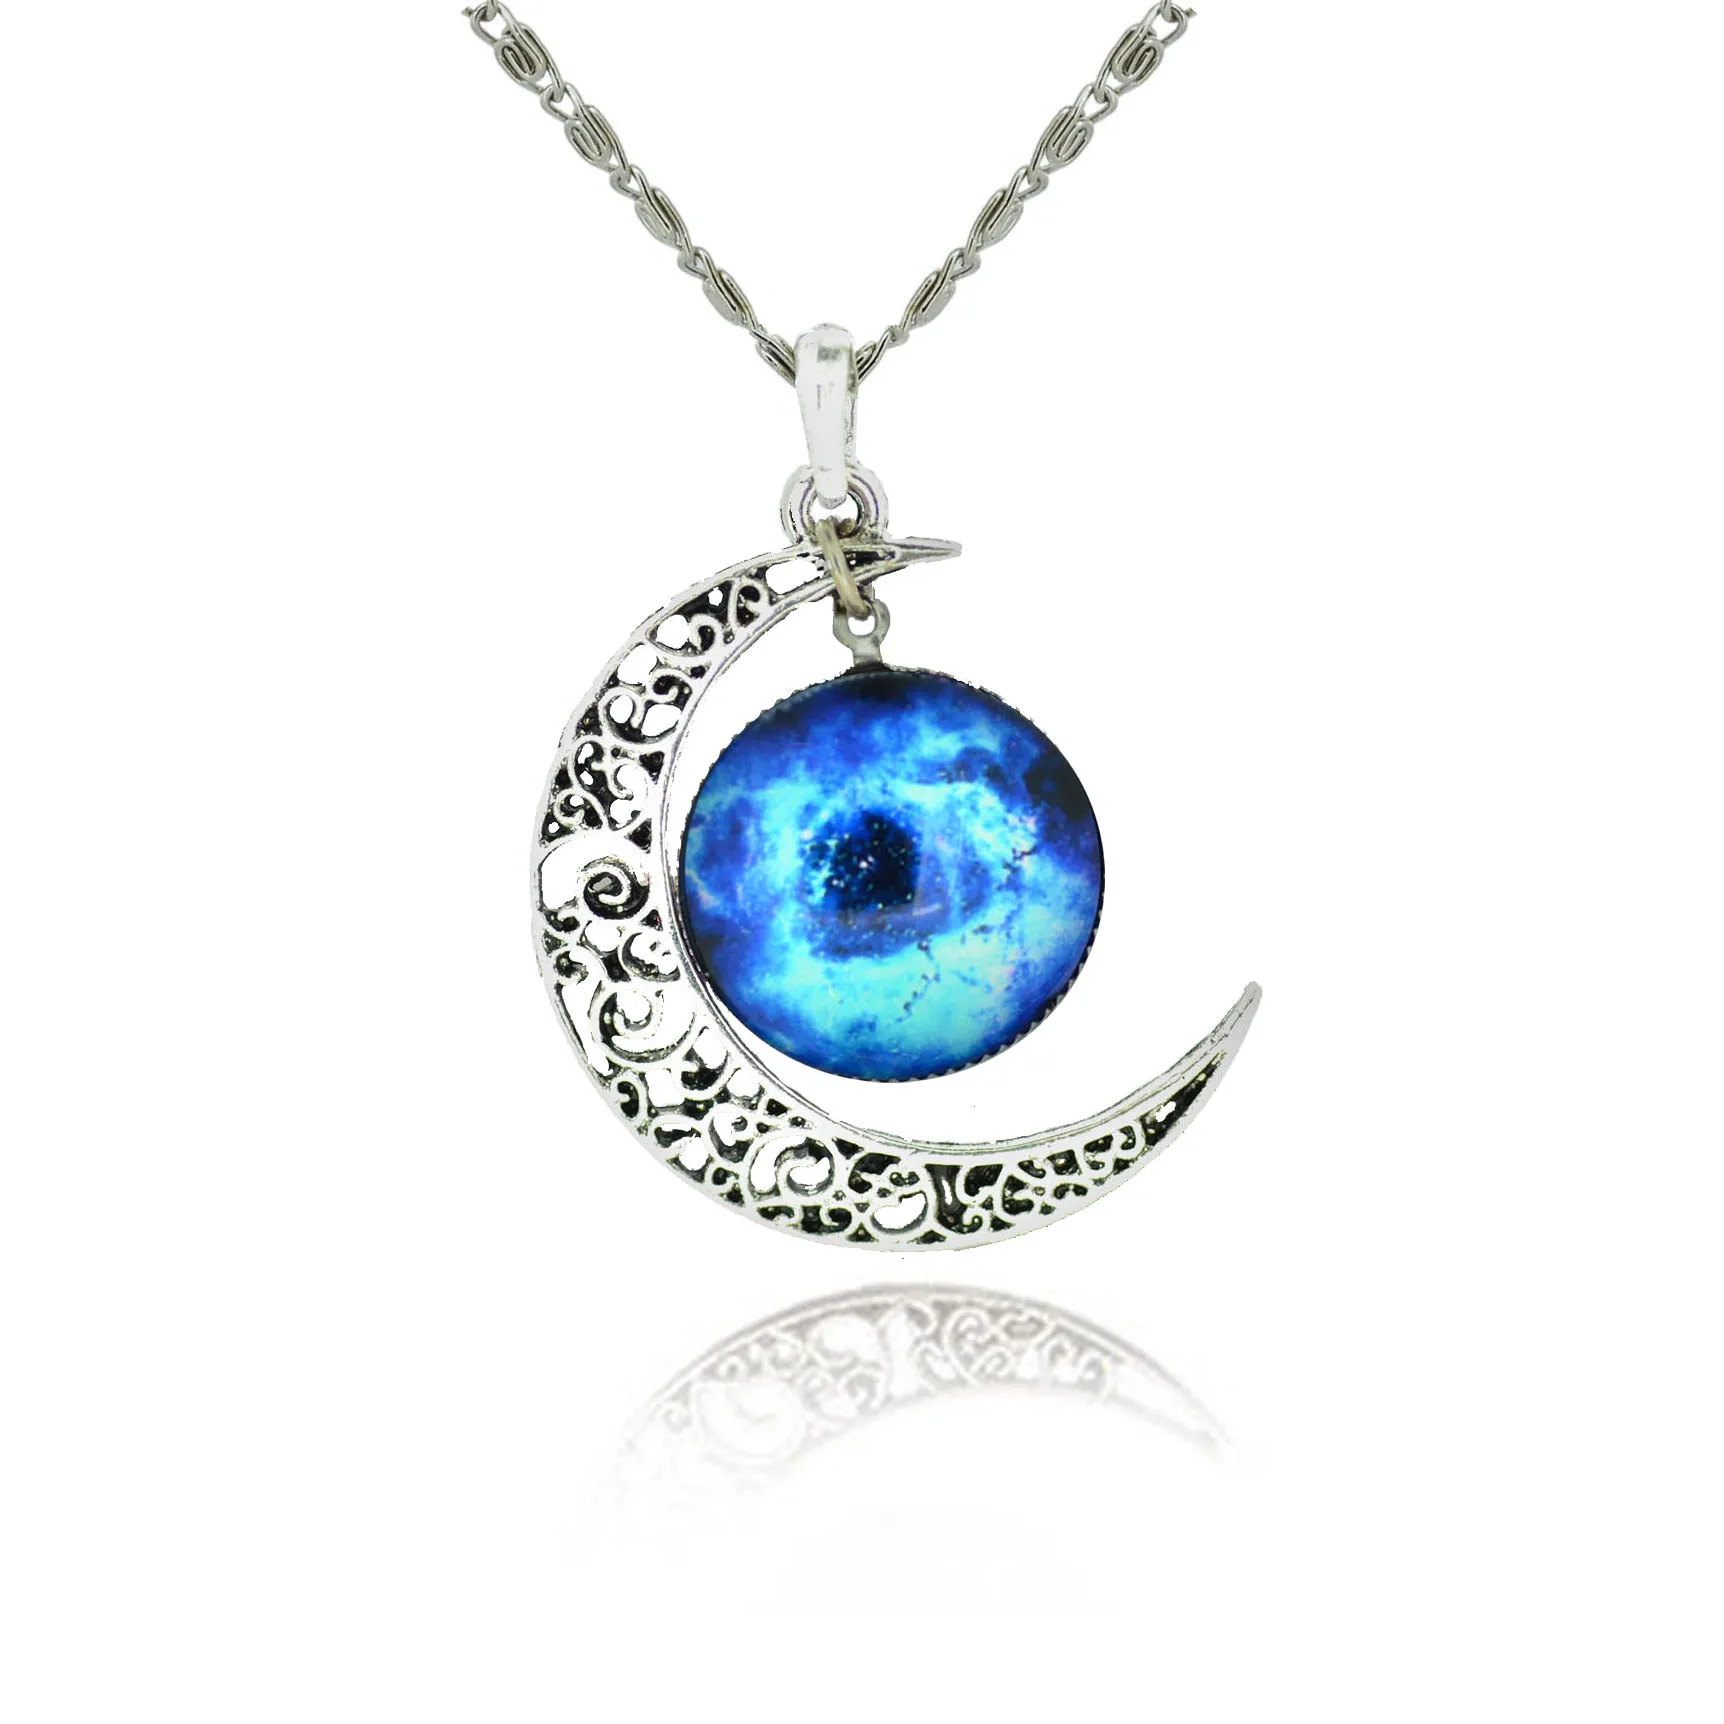 LIEBE ENGEL новейший серебряный цвет ювелирные изделия из стекла Galaxy Ювелирные наборы массивное ожерелье гвоздики браслеты с серьгами браслеты для женщин